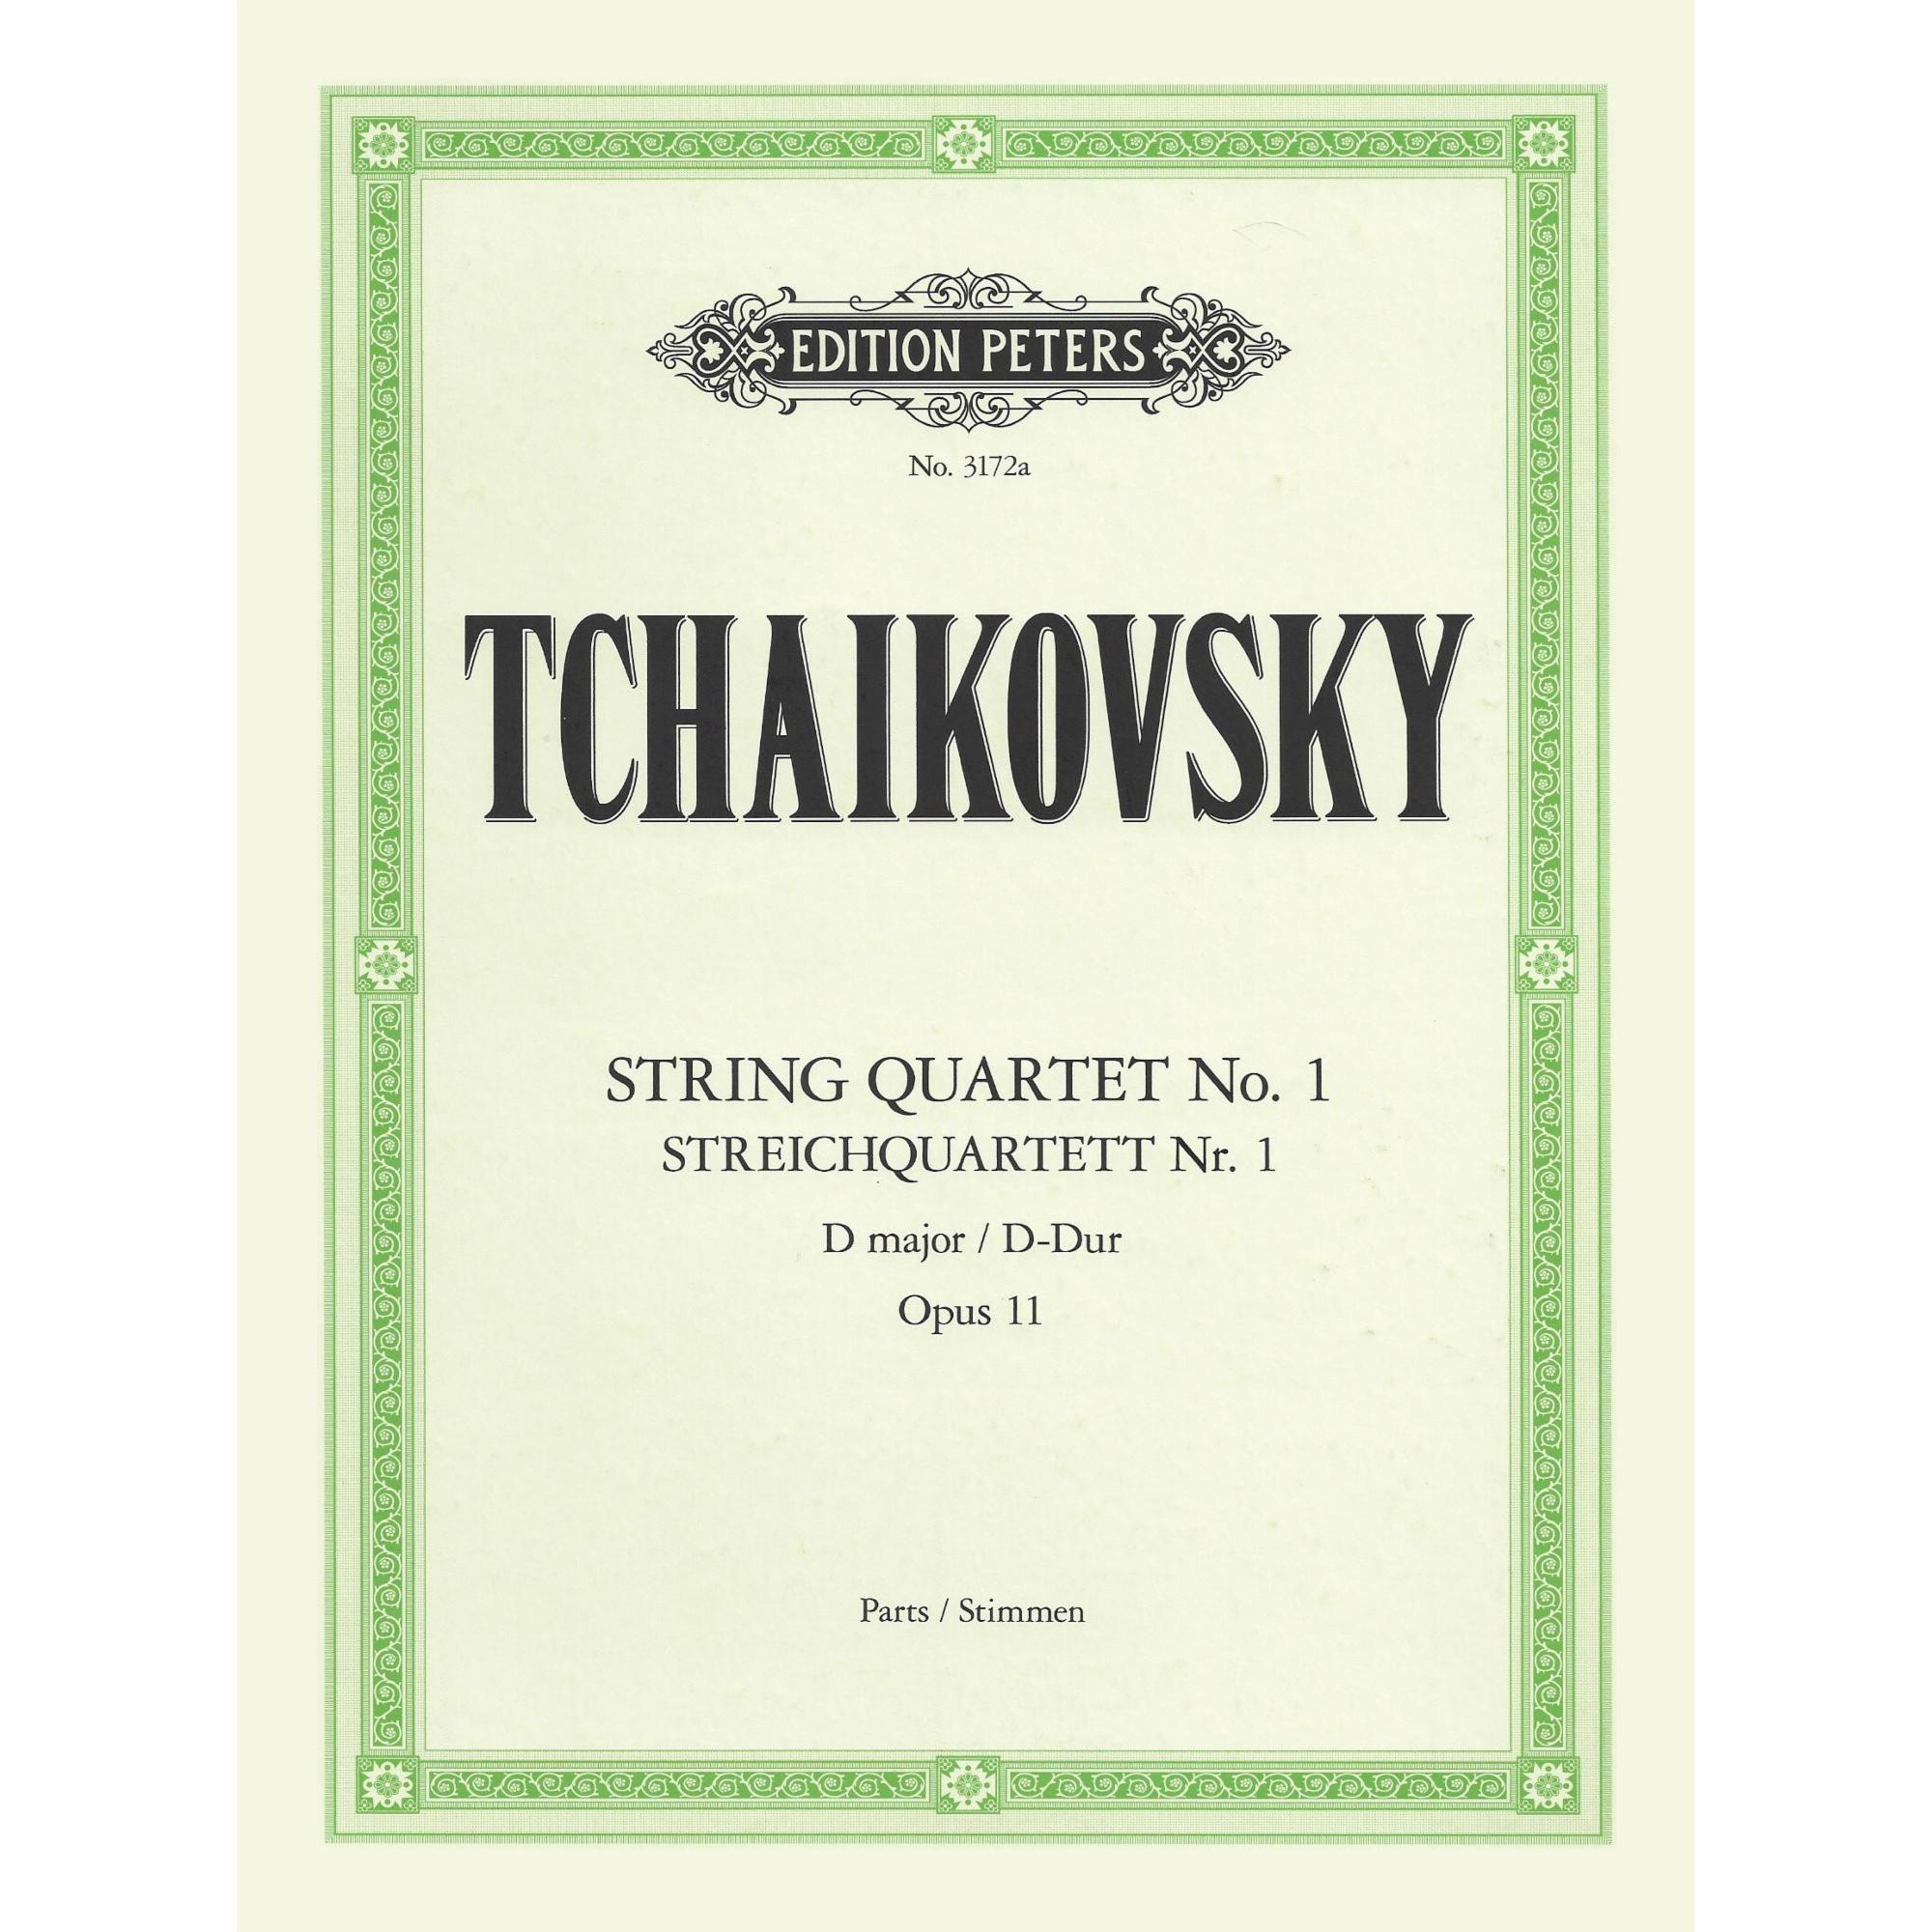 Tchaikovsky -- String Quartet No. 1 in D Major, Op. 11